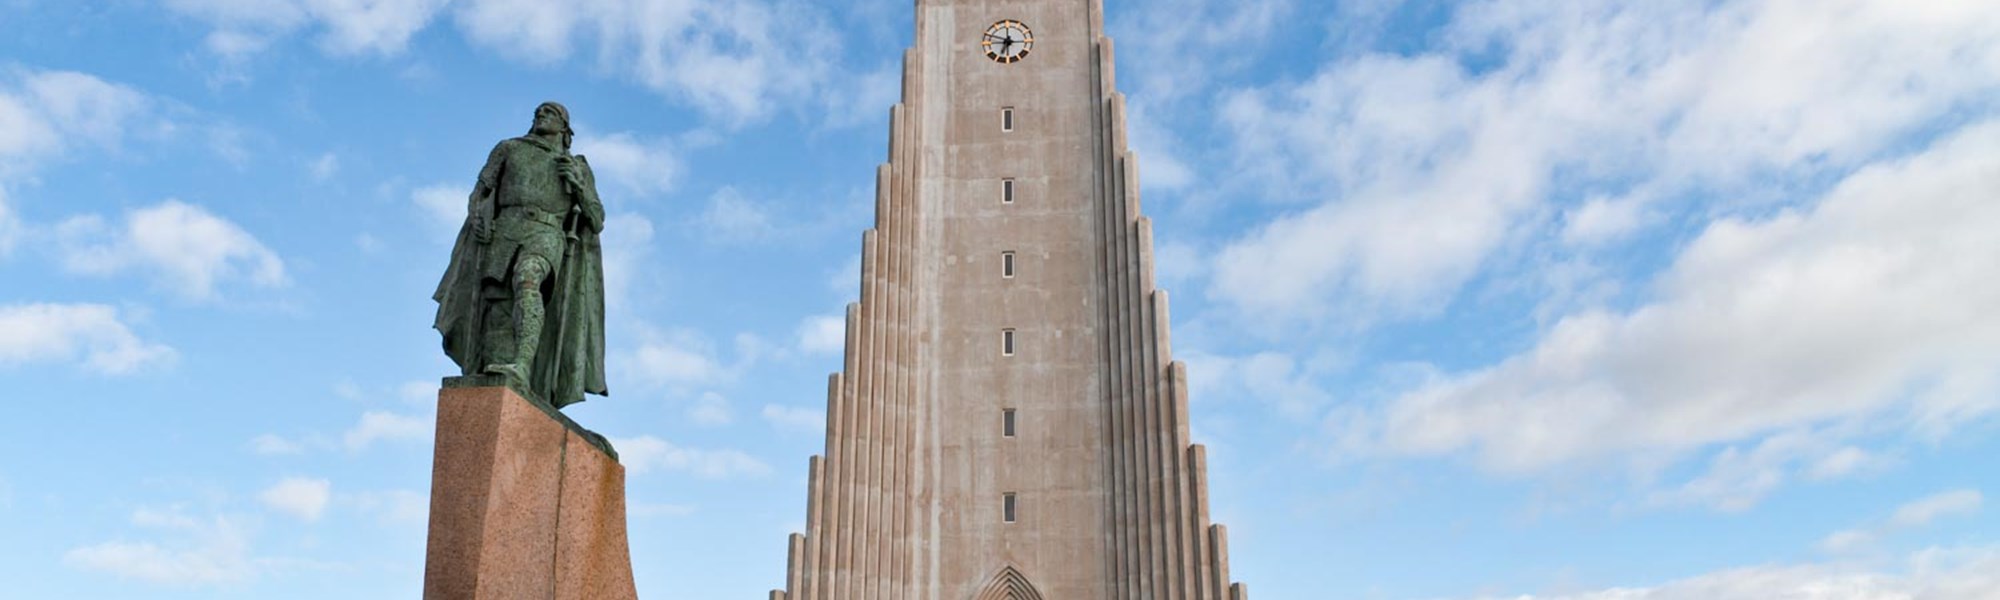 Reykjavik Tours